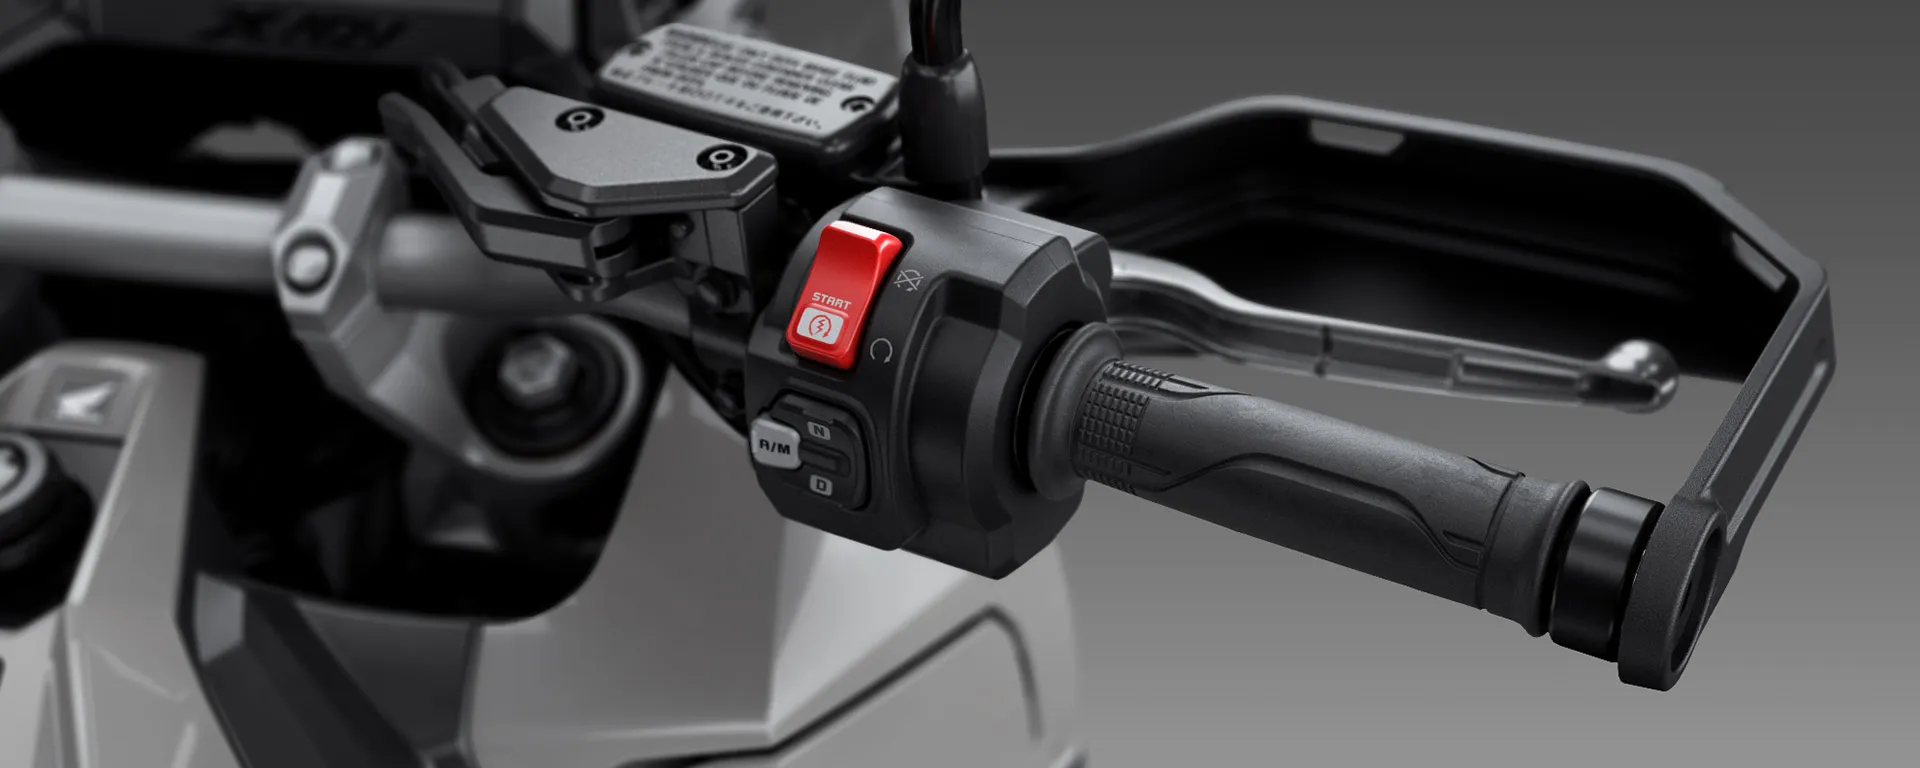 Acelerador Eletônico TBW (Throttle By Wire) da Moto Honda X-ADV